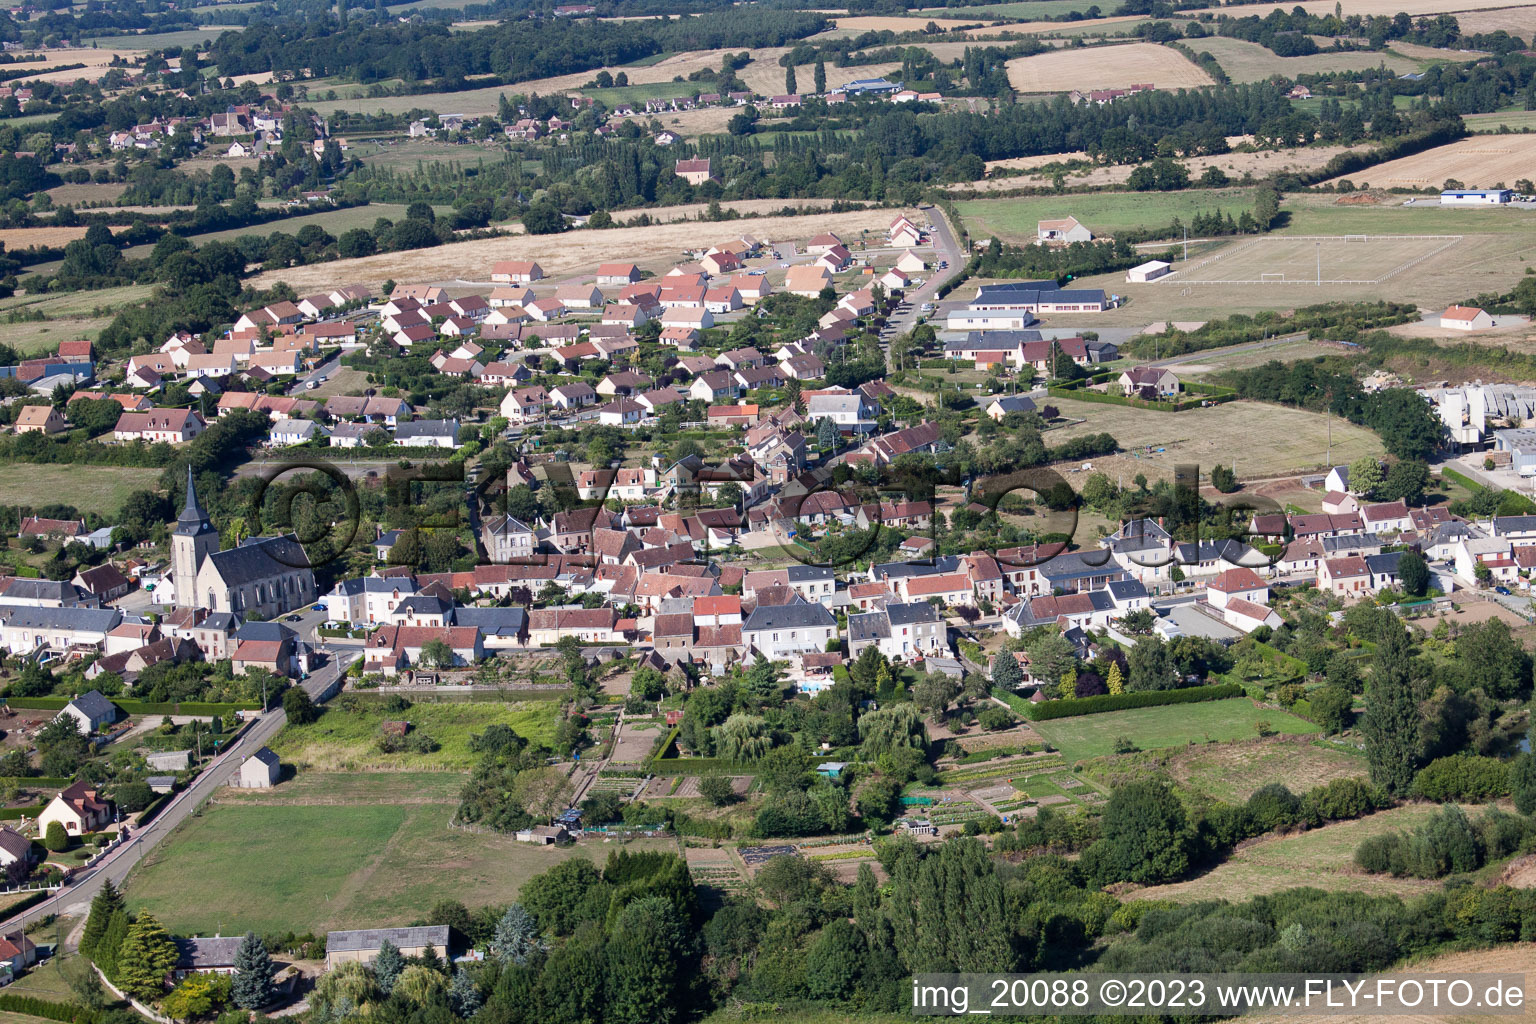 Lamnay dans le département Sarthe, France vue d'en haut